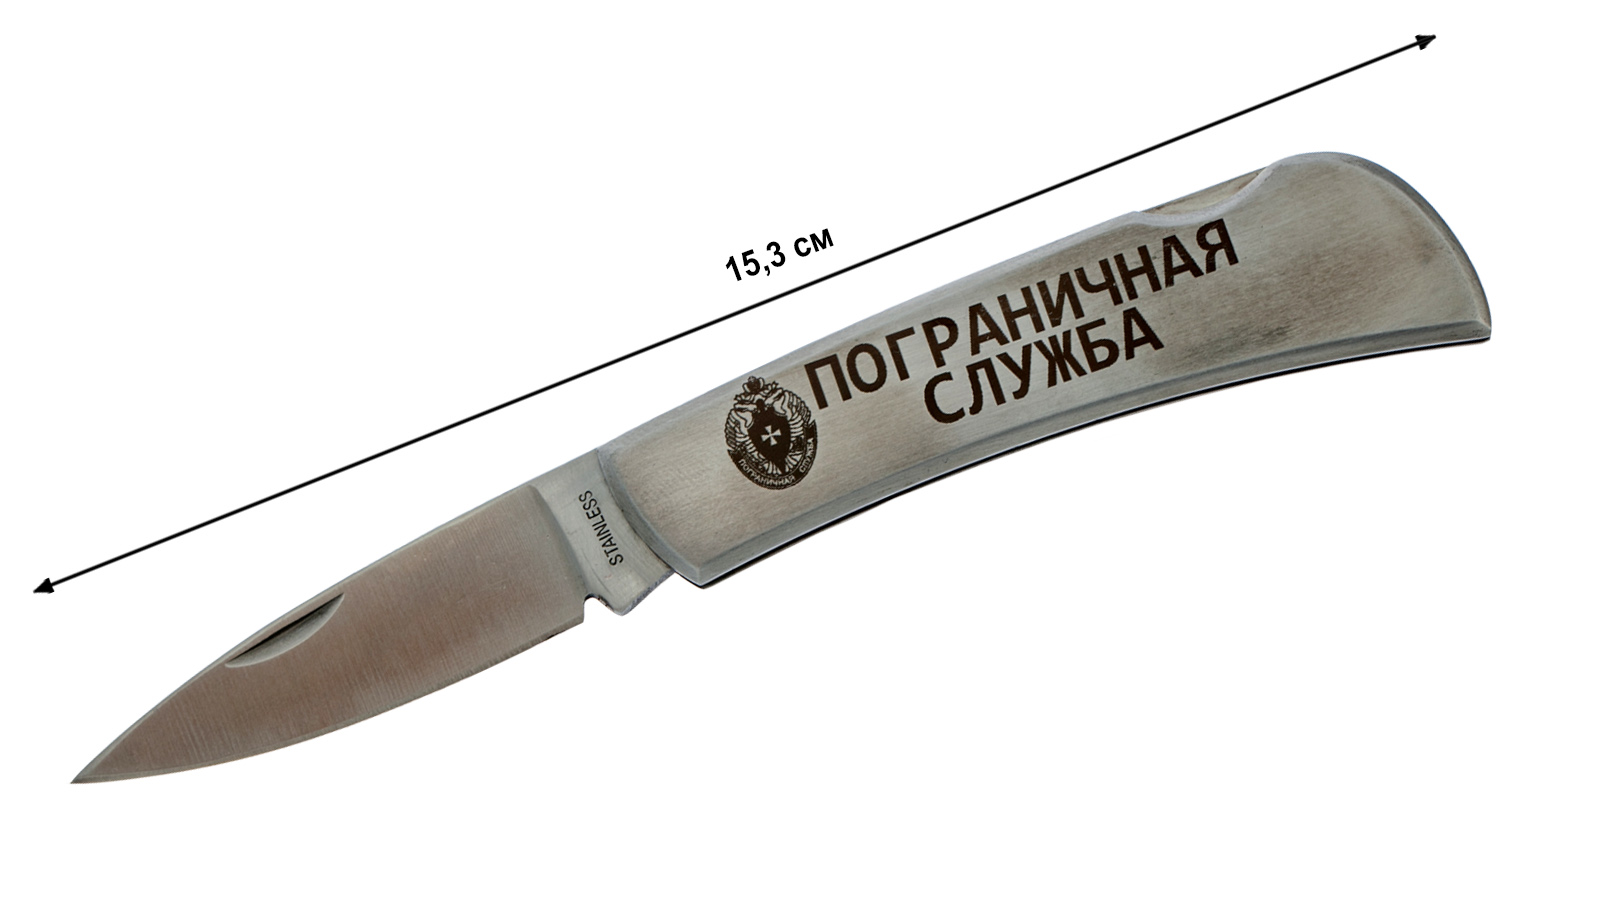 Купить коллекционный складной нож "Пограничная служба" в Военпро